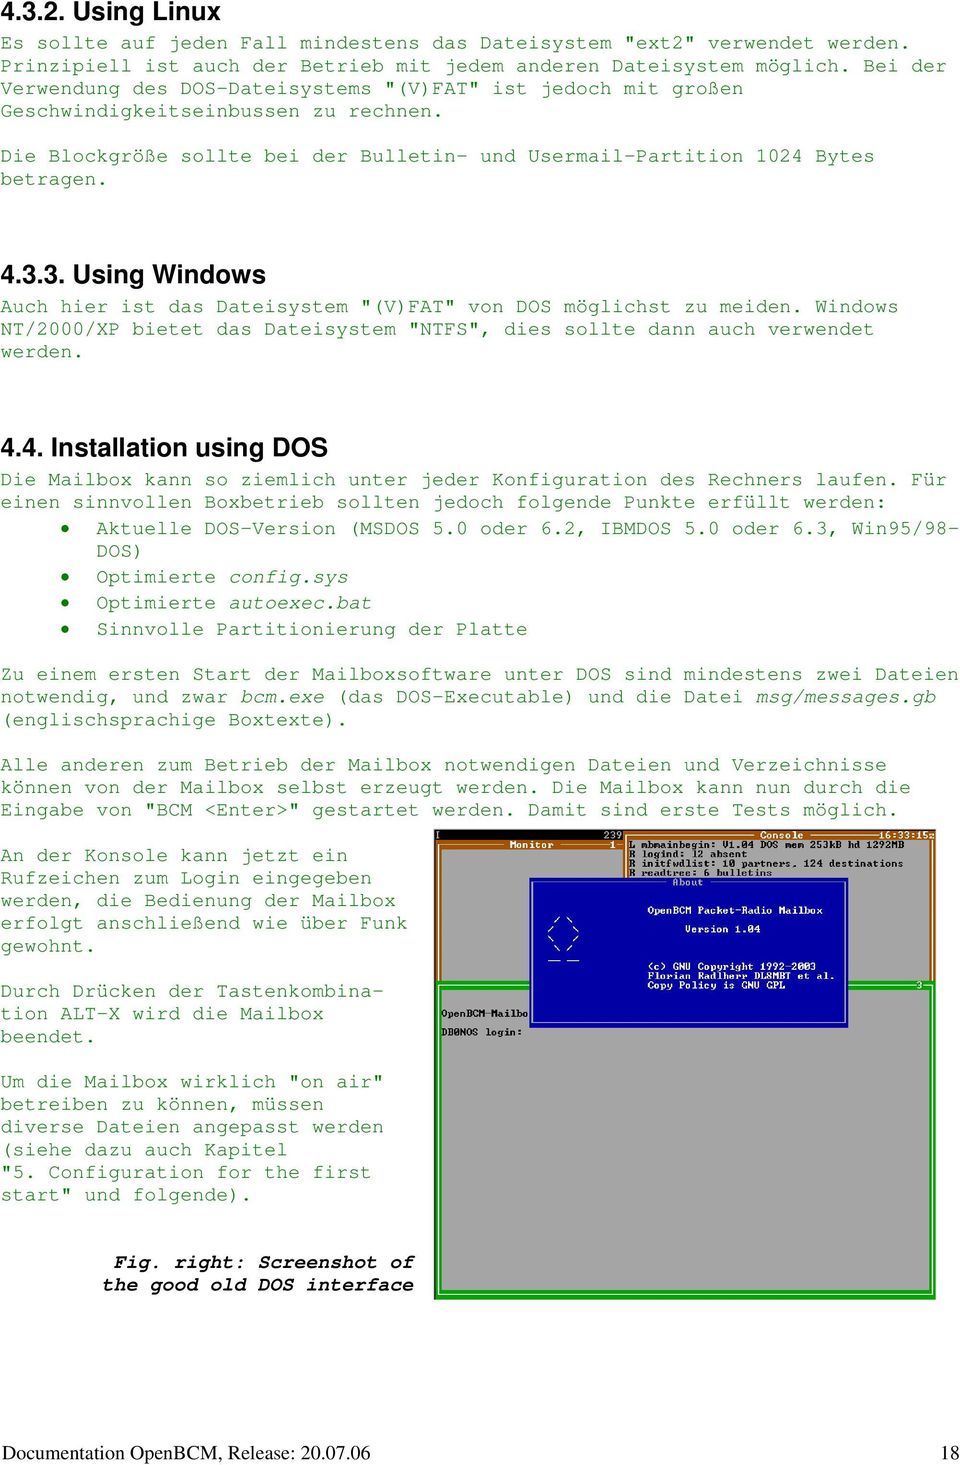 3. Using Windows Auch hier ist das Dateisystem "(V)FAT" von DOS möglichst zu meiden. Windows NT/2000/XP bietet das Dateisystem "NTFS", dies sollte dann auch verwendet werden. 4.